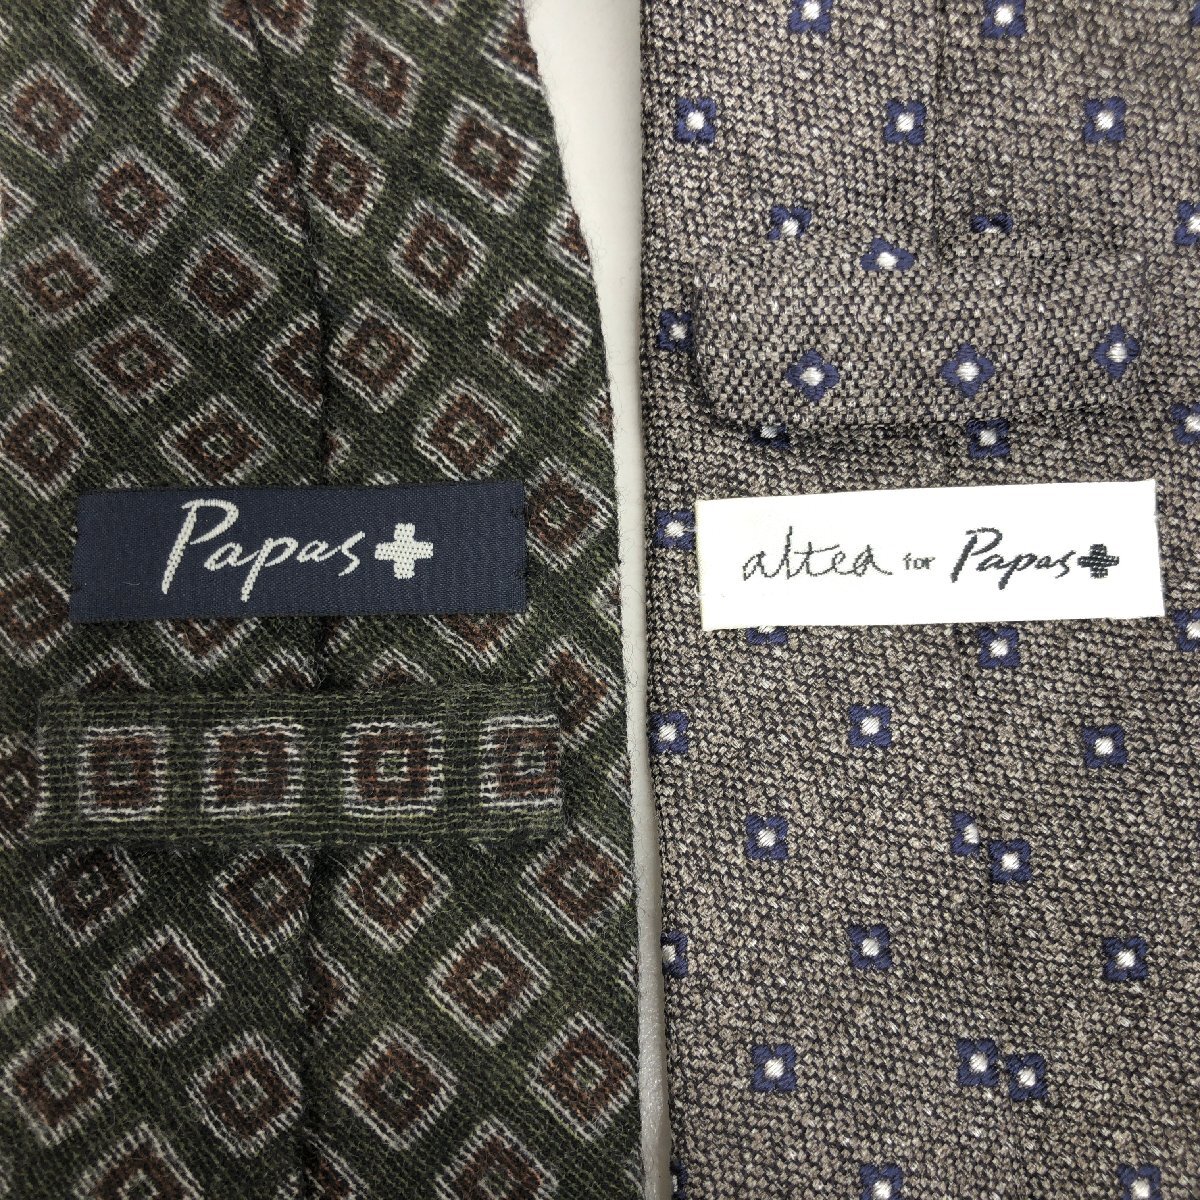 Papas+ Papas плюс мелкий рисунок рисунок шелк 100% шерсть 100% галстук 2 шт. комплект продажа комплектом Италия производства сделано в Японии внутренний стандартный товар мужской джентльмен 